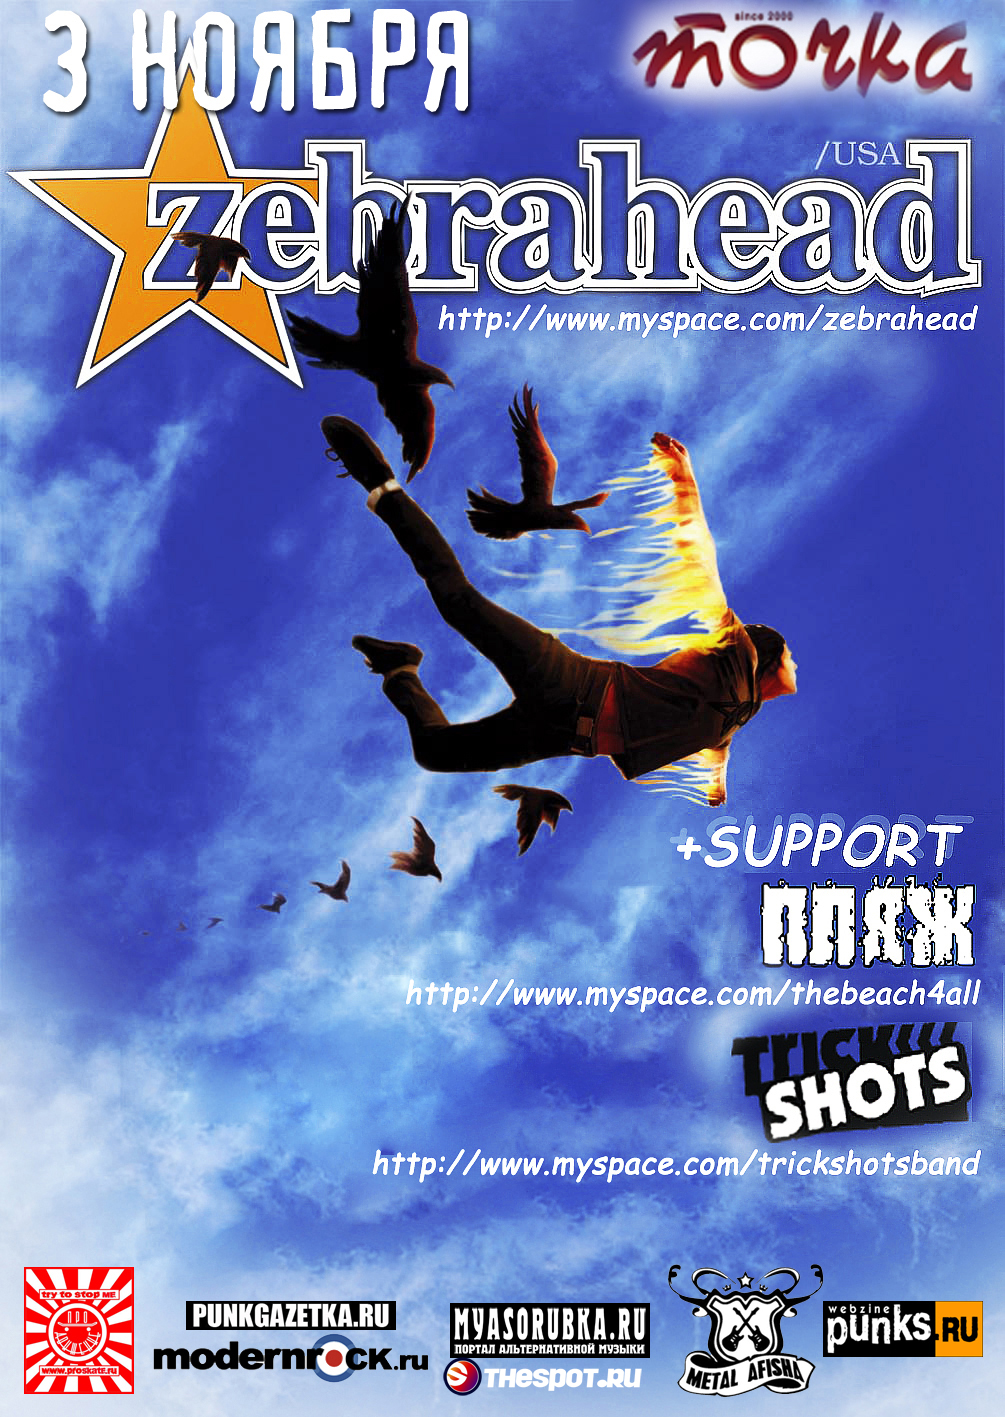 ZEBRAHEAD (USA), ПЛЯЖ, TRICK SHOTS @ ТОЧКА 03.11.09